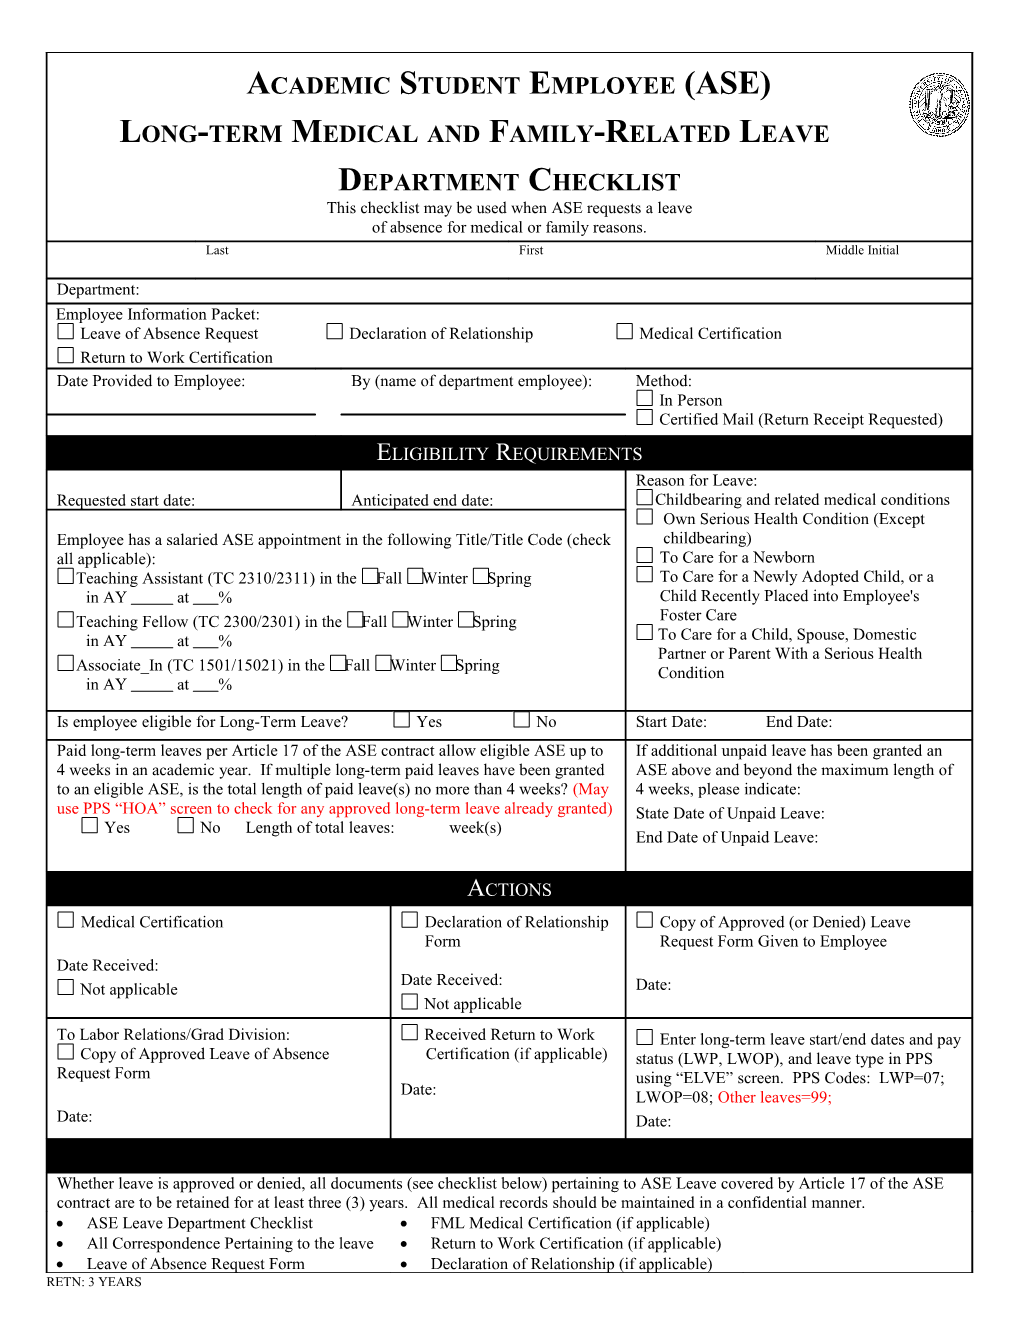 FML Department Checklist